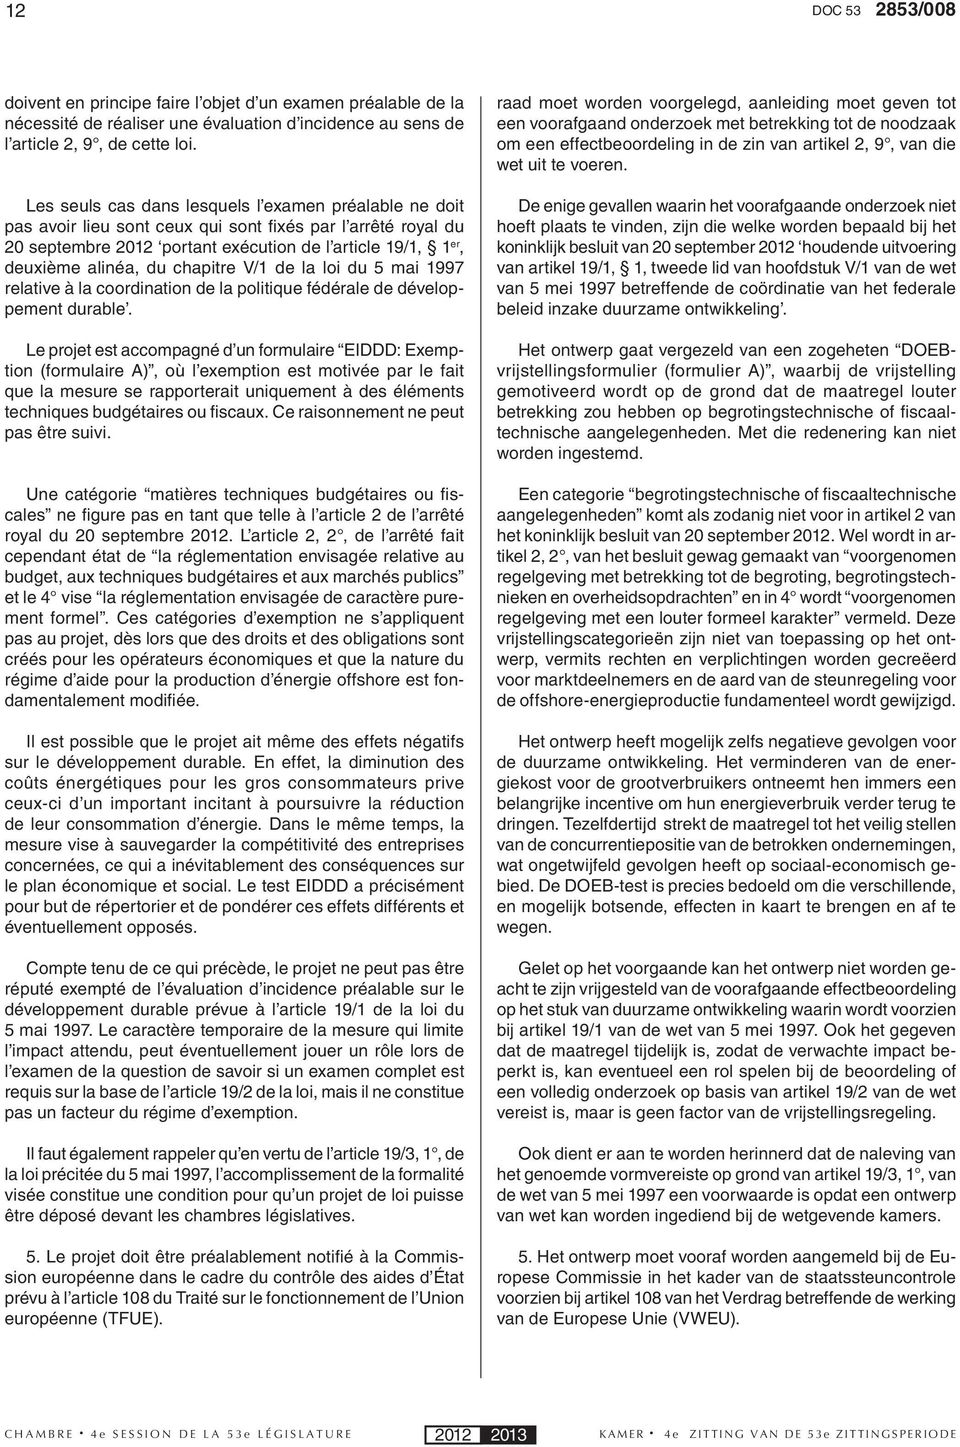 chapitre V/1 de la loi du 5 mai 1997 relative à la coordination de la politique fédérale de développement durable.